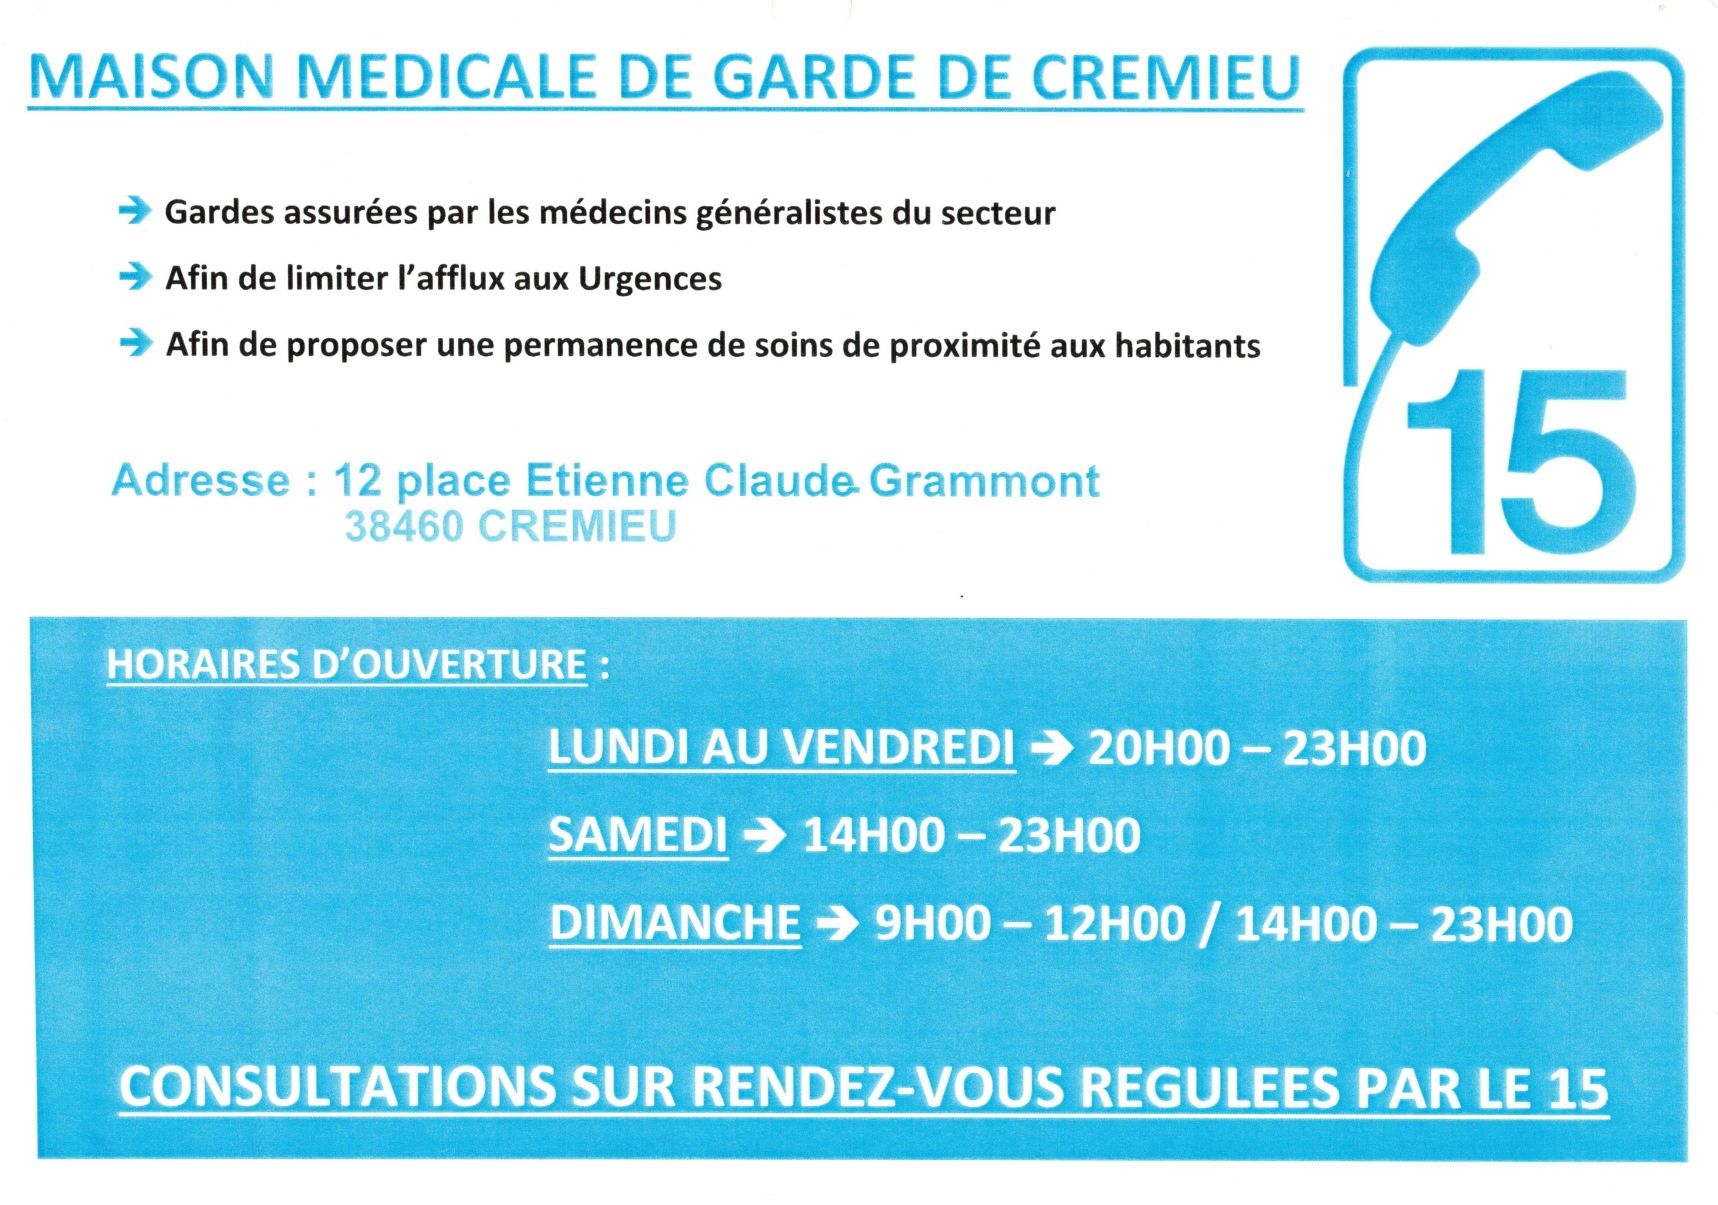 Maison médicale de garde de Crémieu_page-0001.jpg